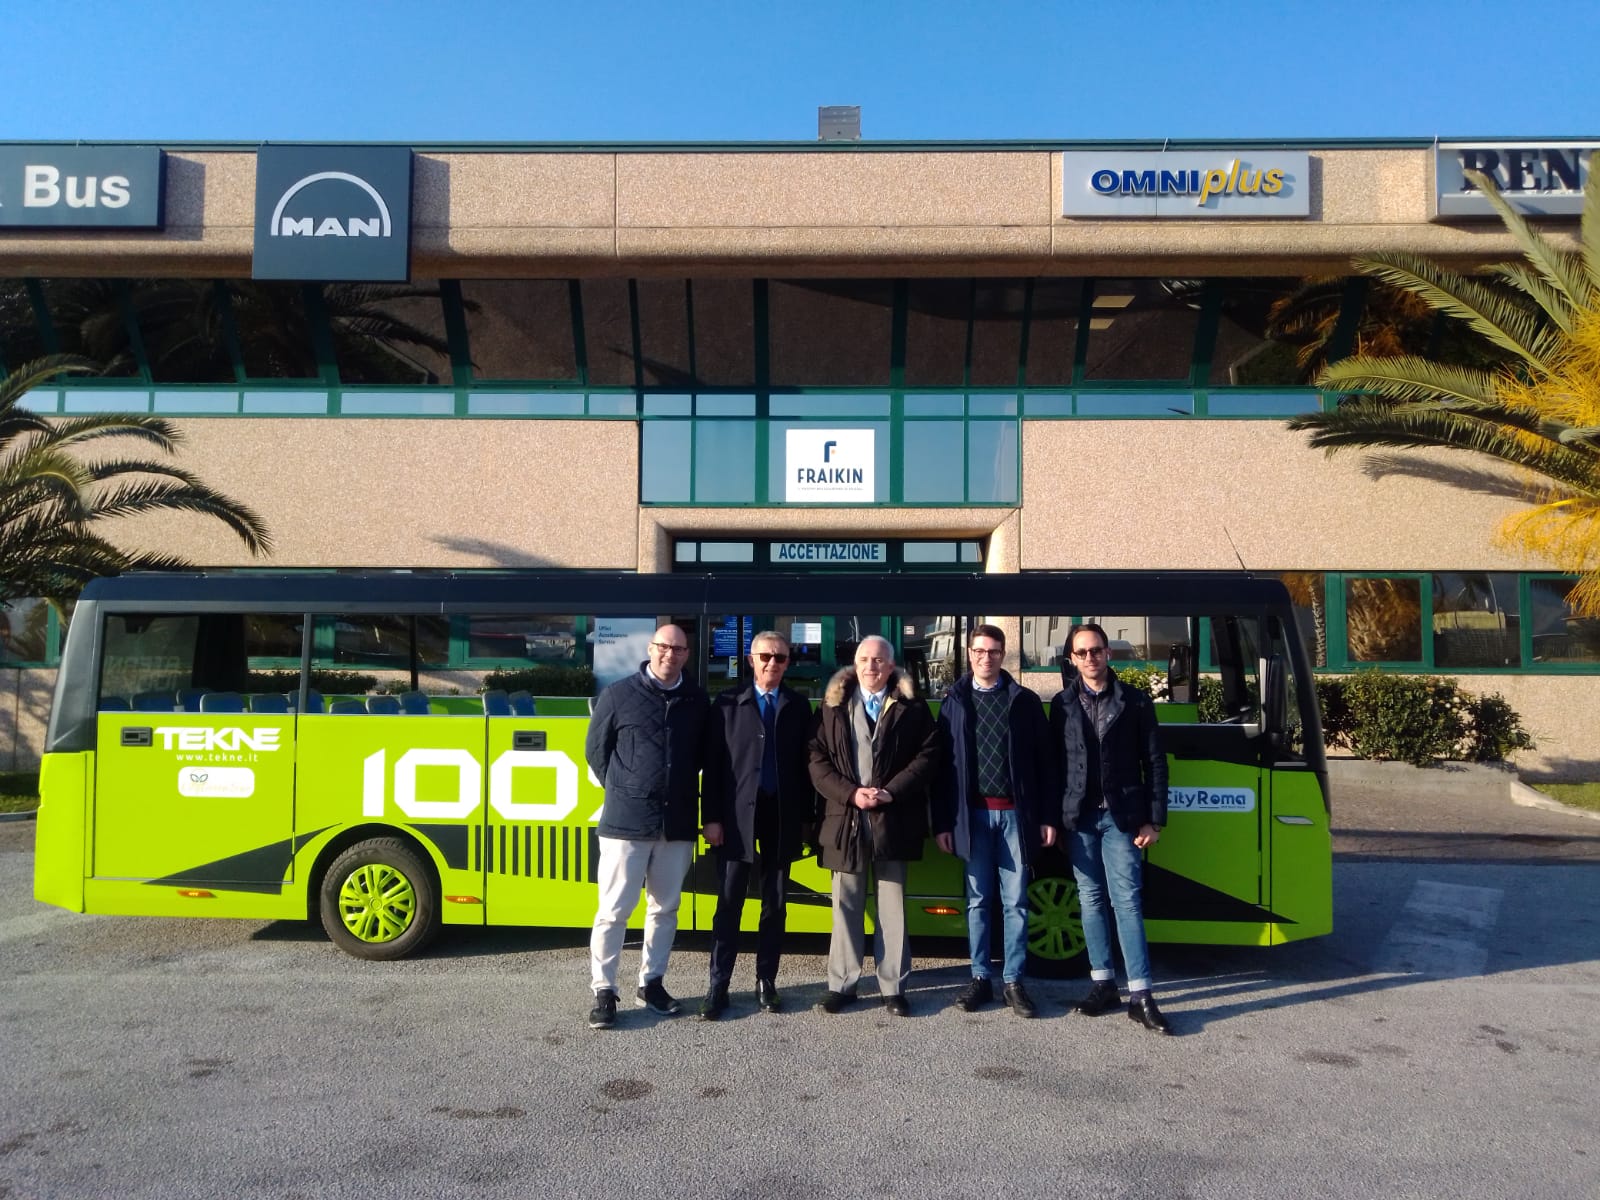 Bus turistico elettrico, prove per mobilità sostenibile nel Cilento